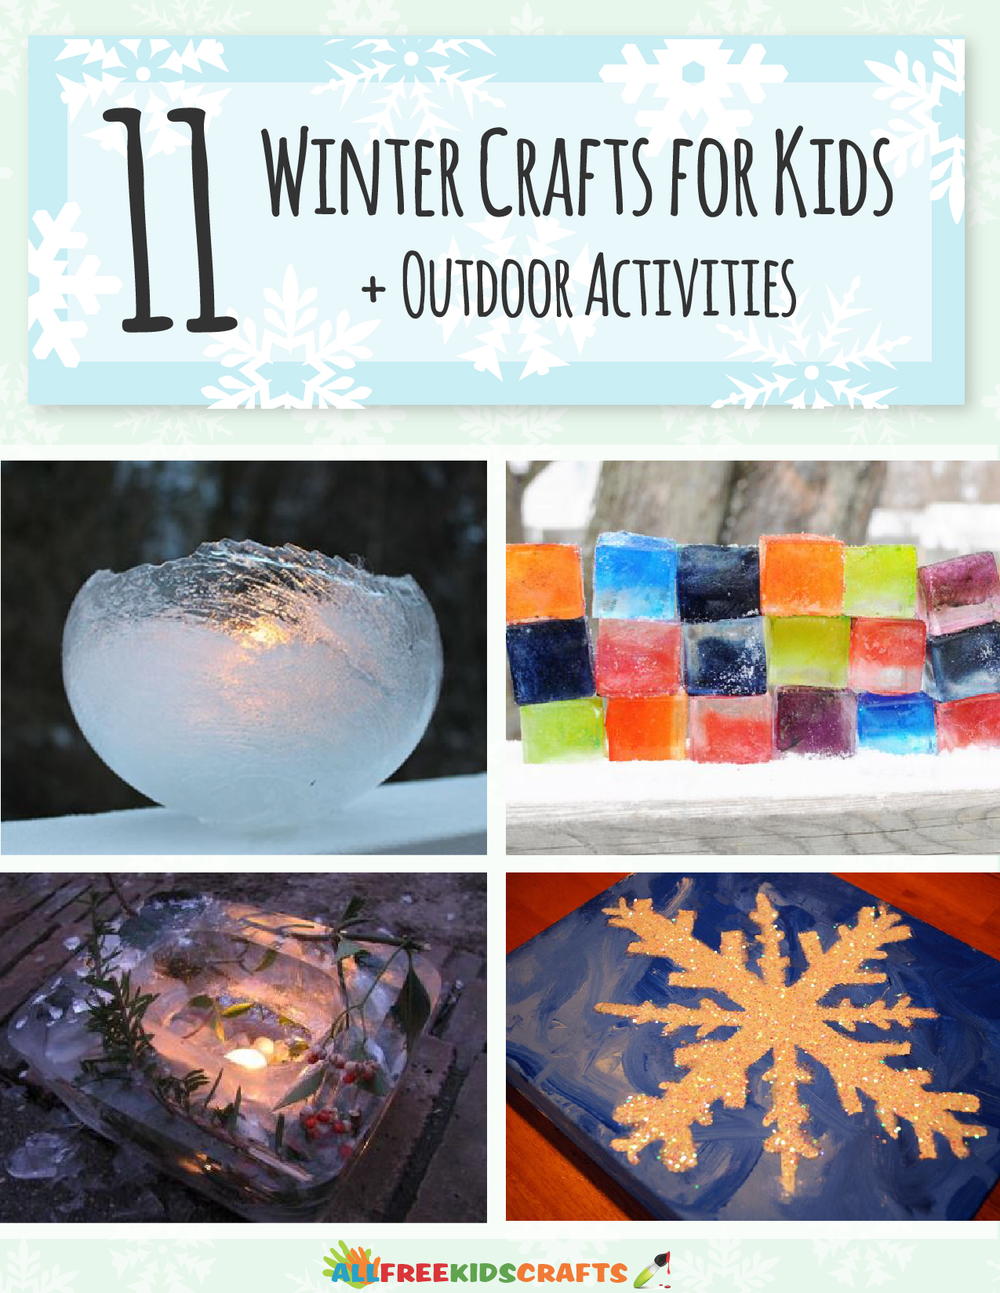 Download 11 Winter Crafts for Kids + Outdoor Activities free eBook ...